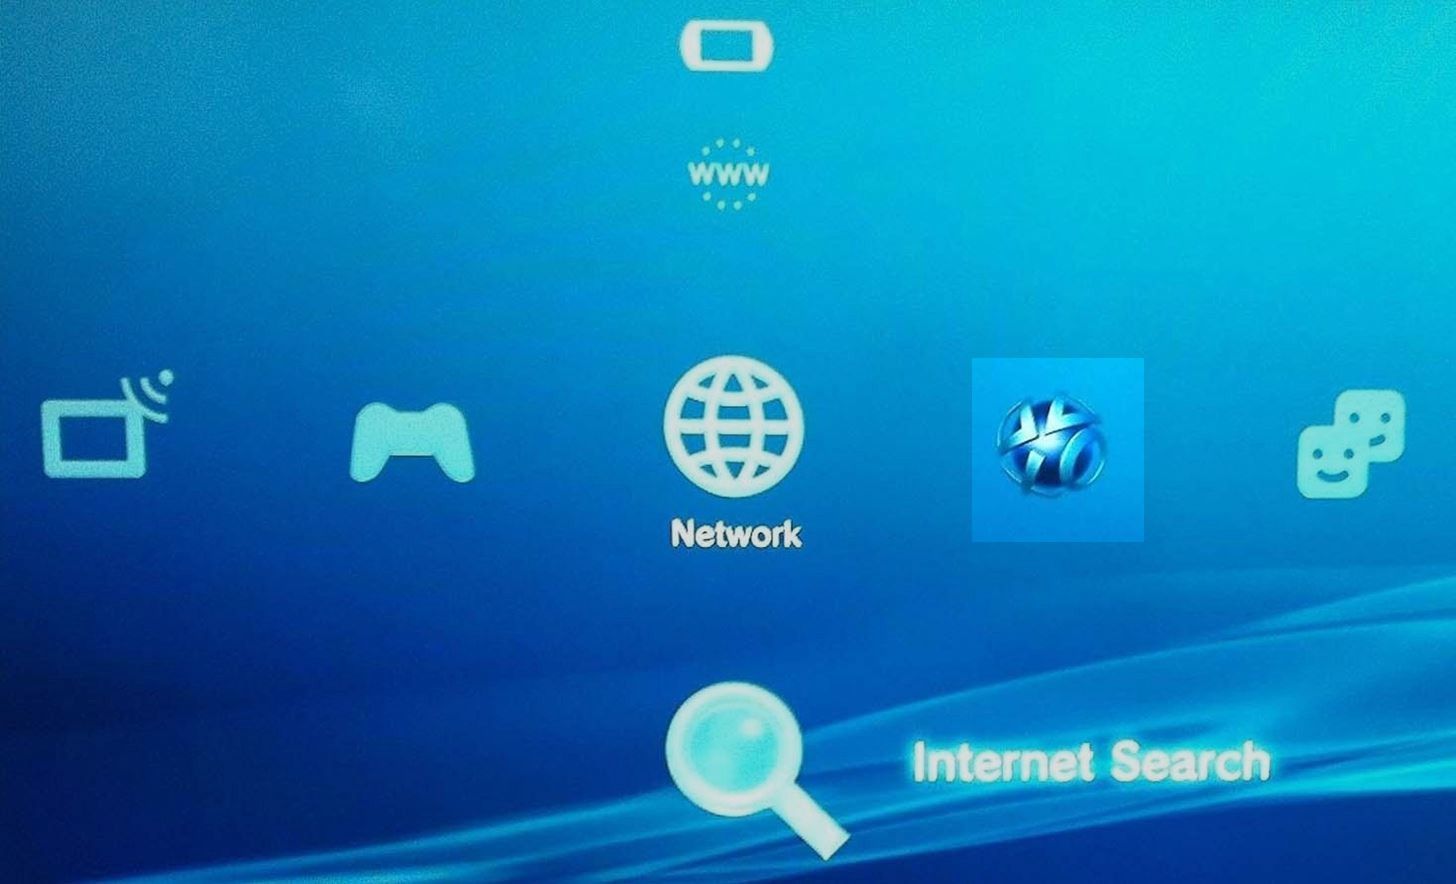 Главное меню PlayStation 3 с выделенным значком PlayStation Network